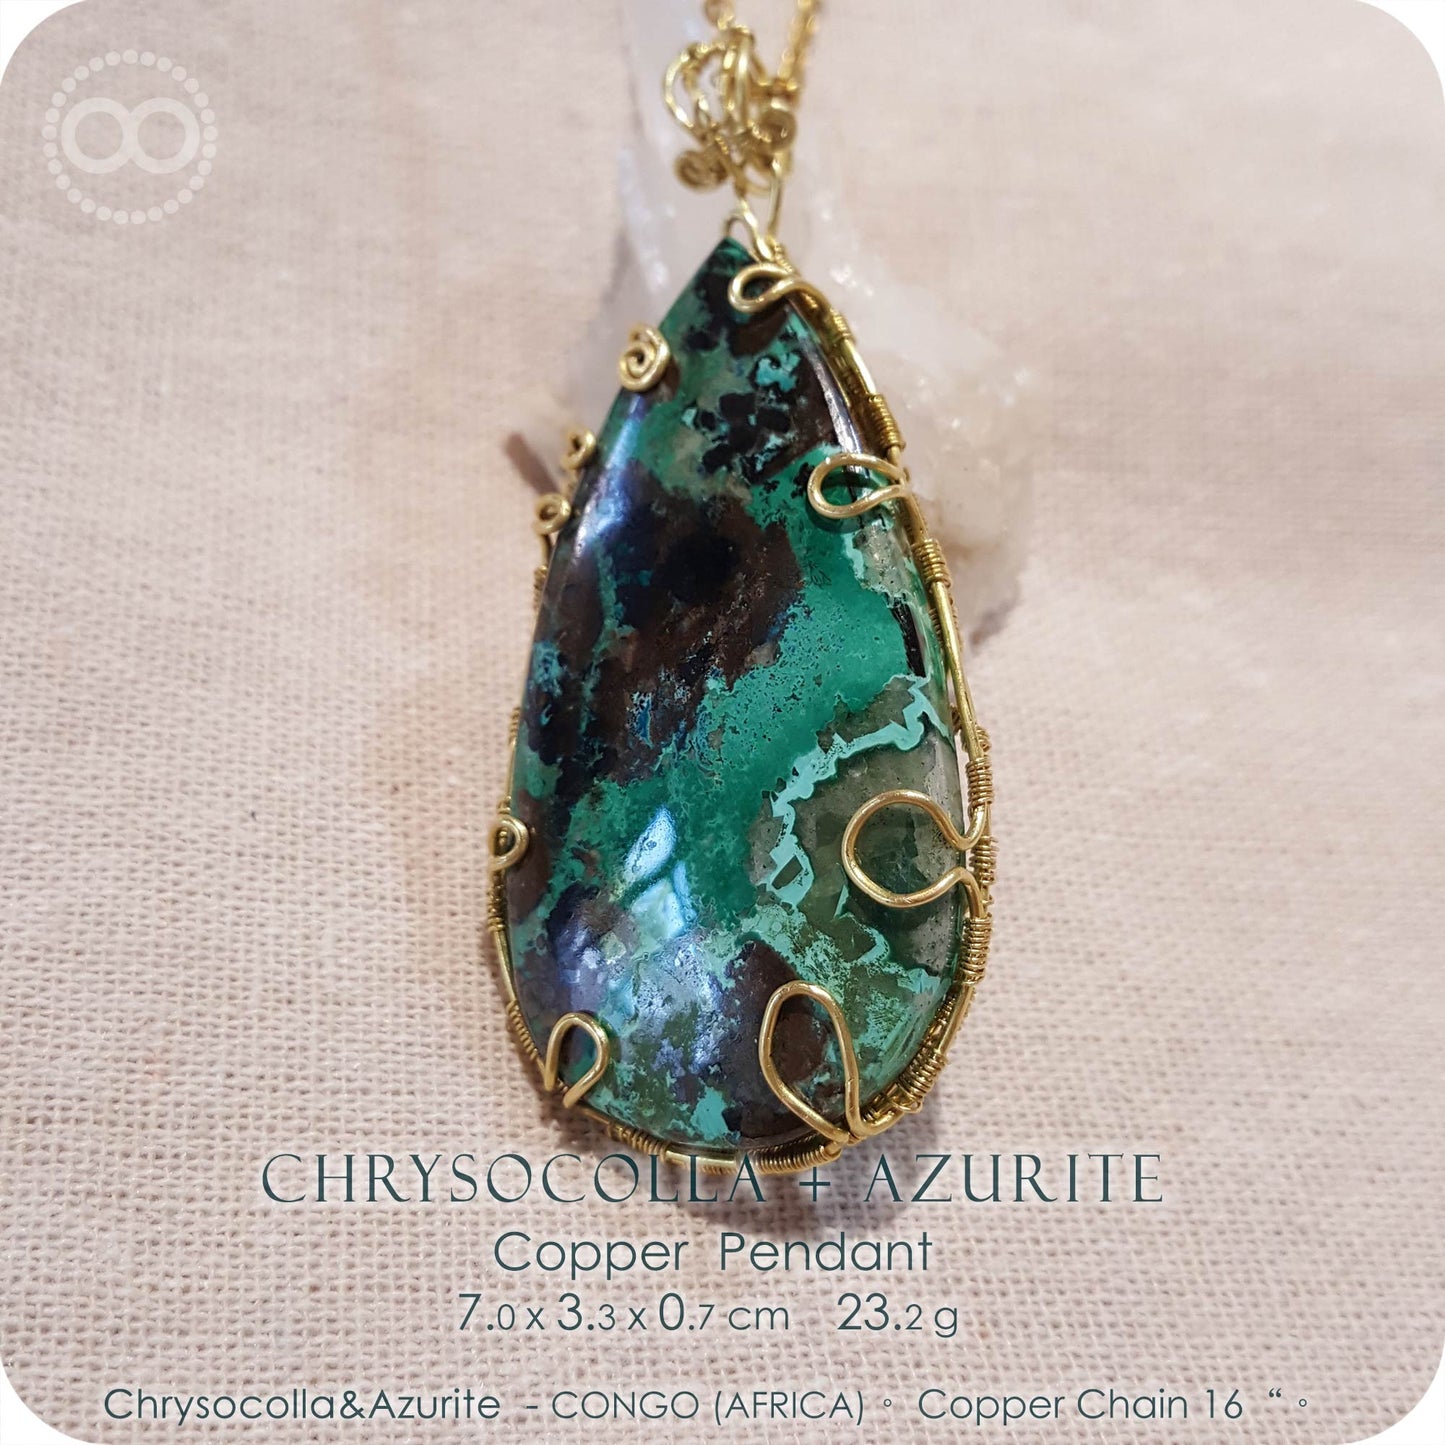 Chrysocolla + Azurite ✡ Copper Necklace - H196